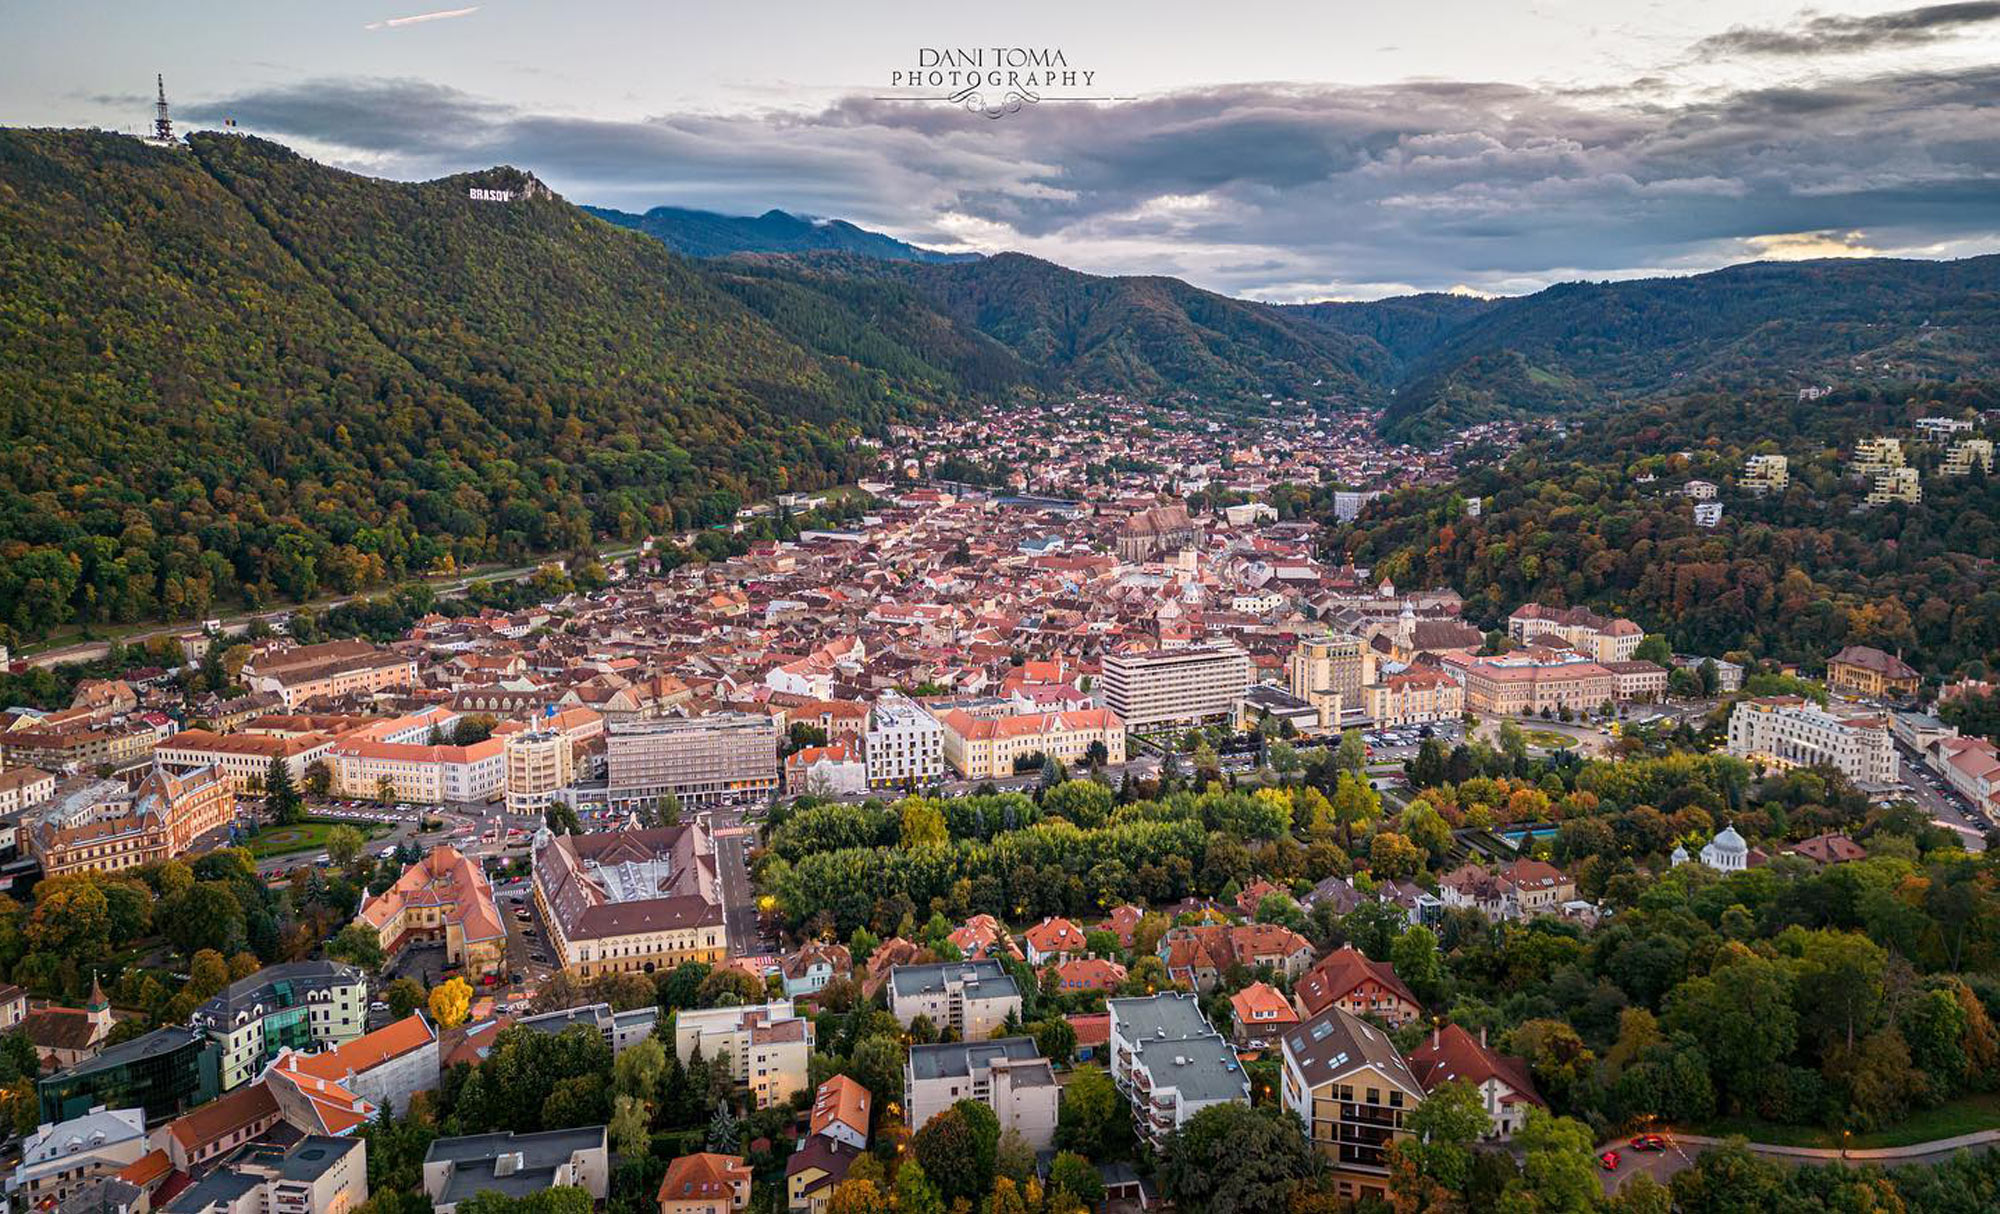 Brasov Old Town - Aerial View